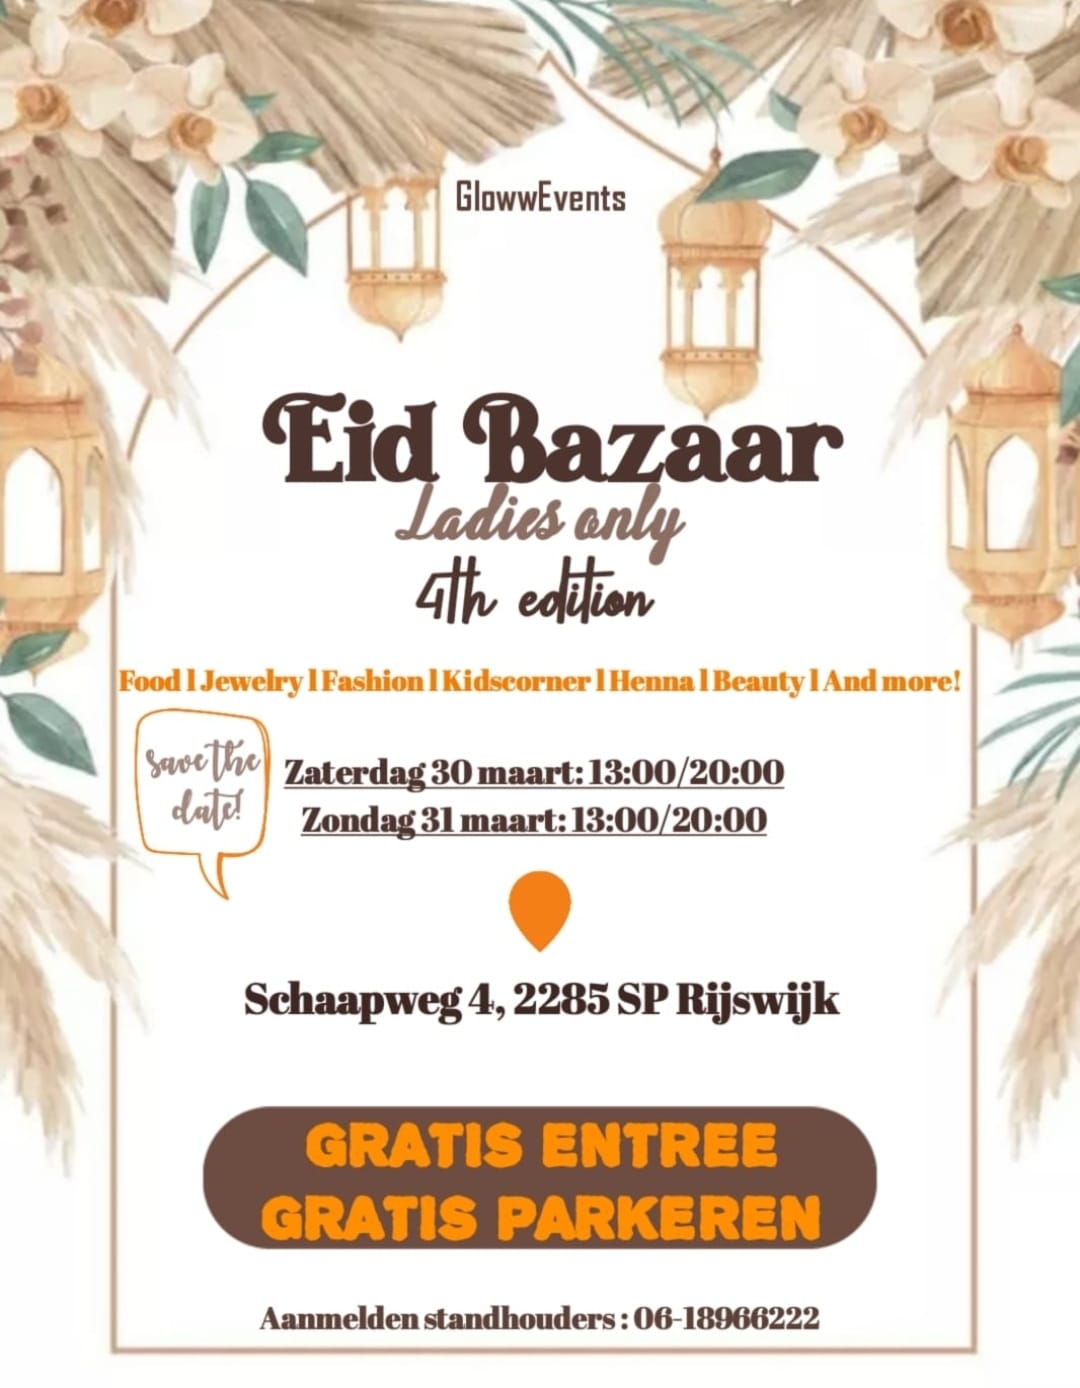 Eid Bazaar